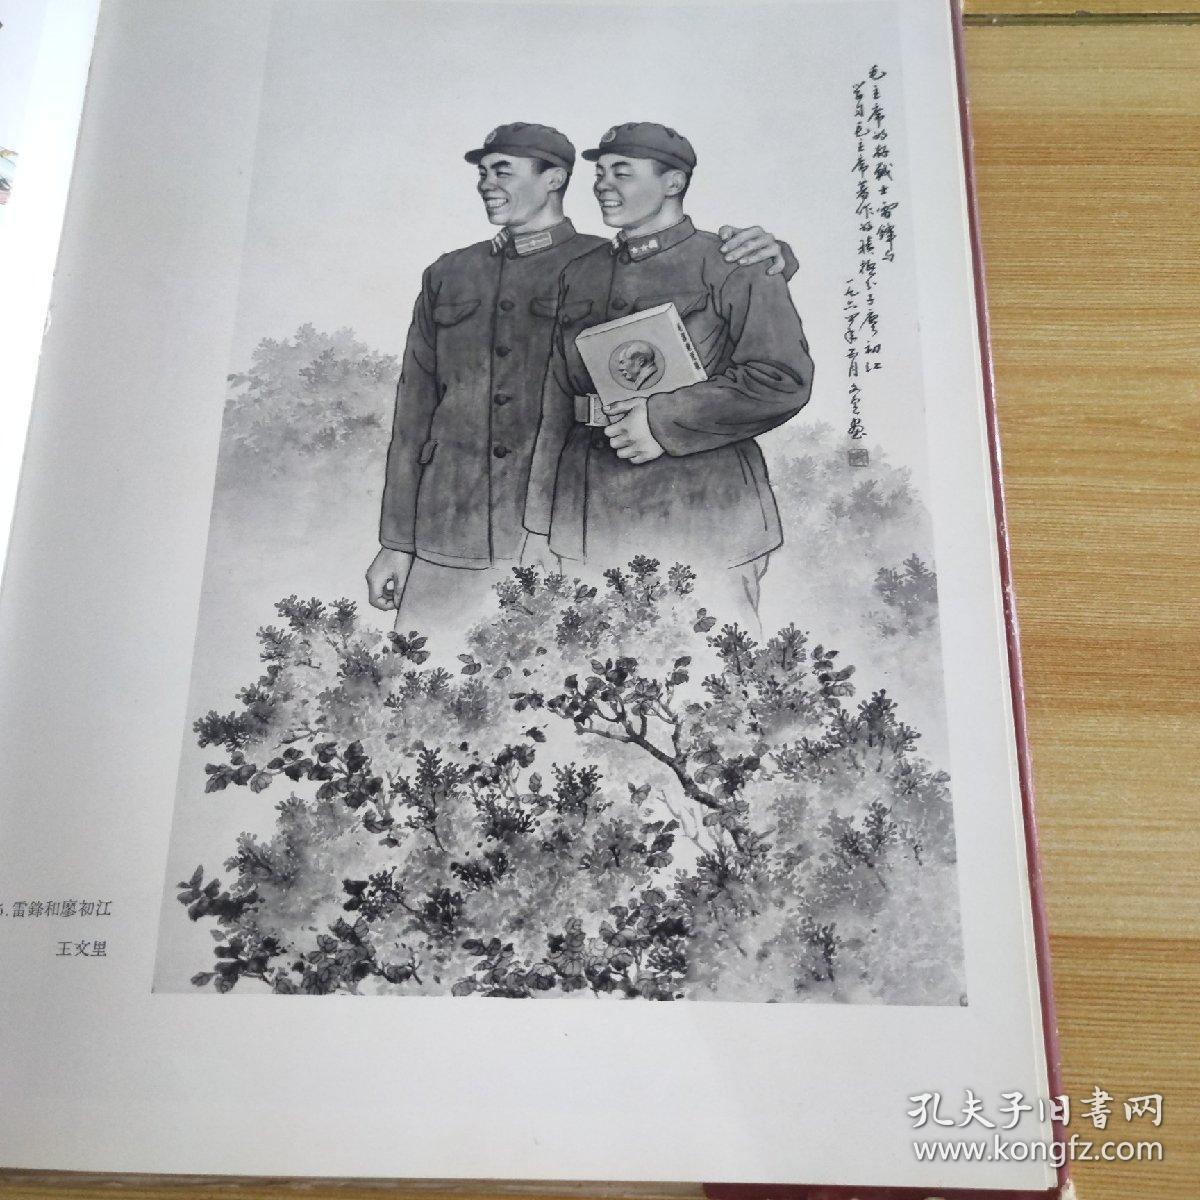 中国人民解放军第三届美术作品展览会  中国画选集